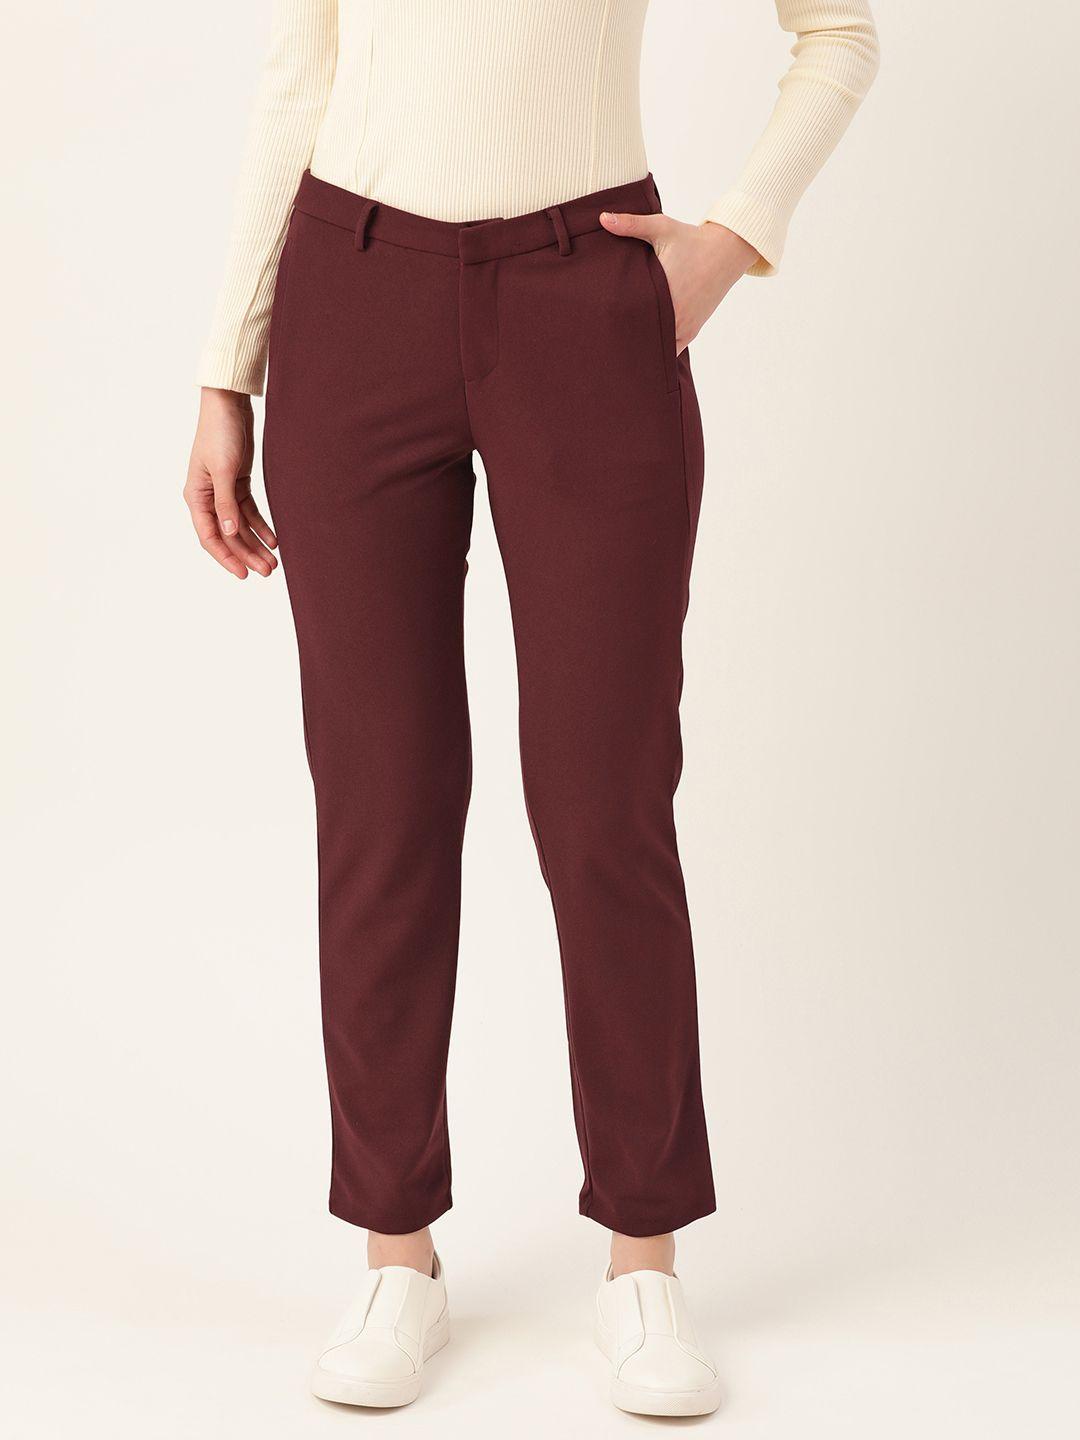 dressberry women maroon trousers